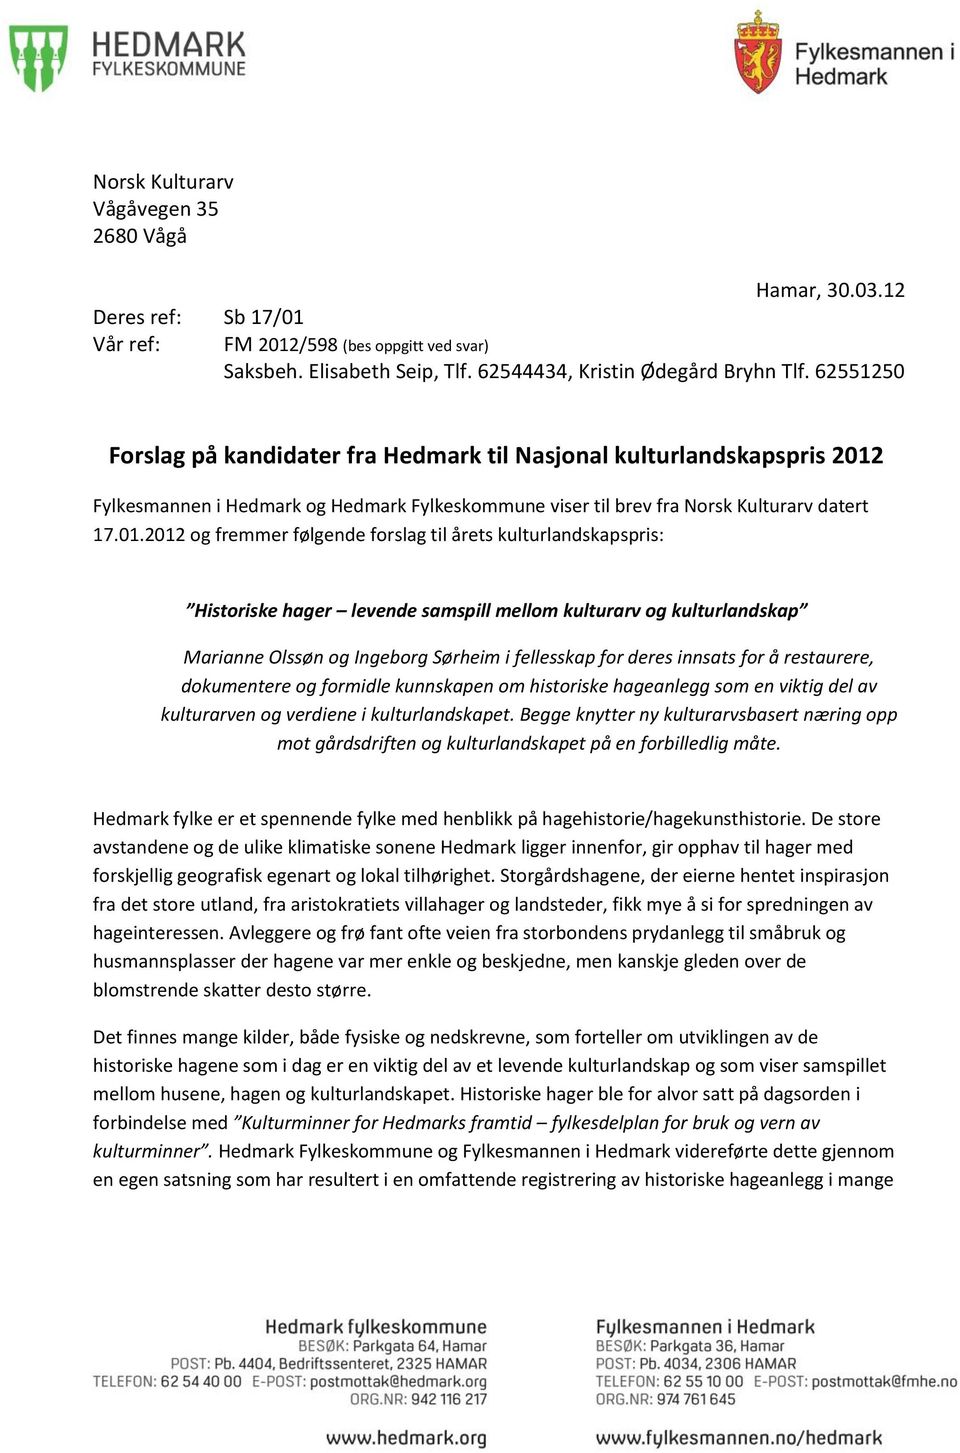 Fylkesmannen i Hedmark og Hedmark Fylkeskommune viser til brev fra Norsk Kulturarv datert 17.01.